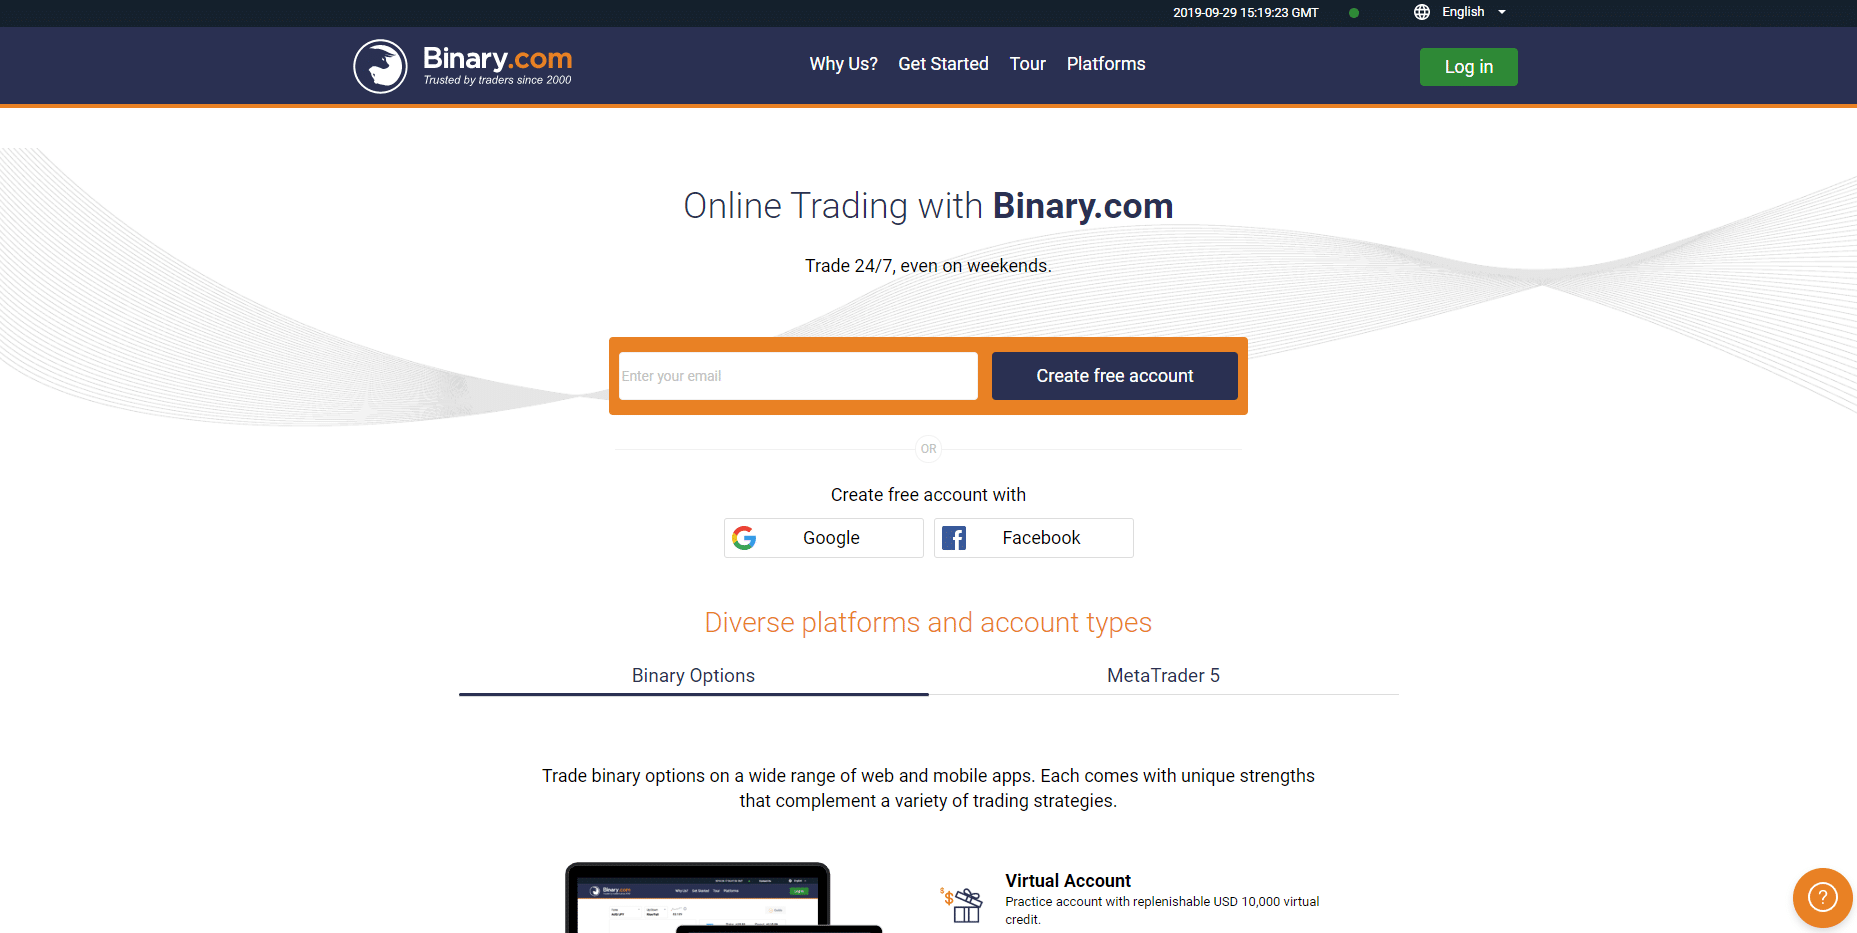 Official Binary.com website